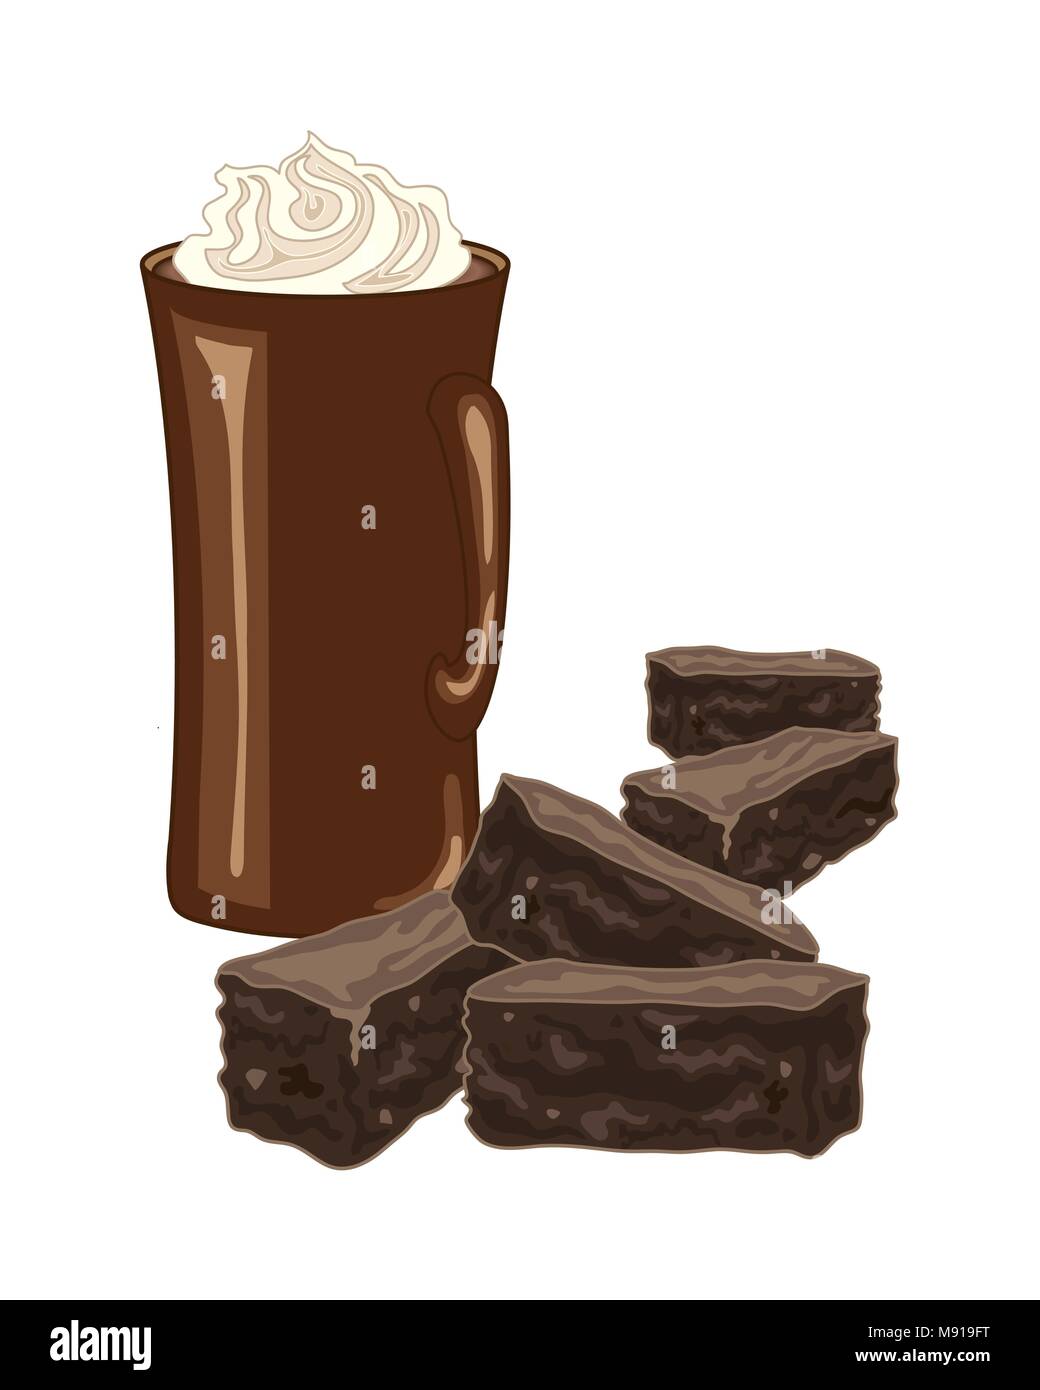 Un vecteur illustration en format eps 10 des brownies au chocolat avec une tasse de café et de crème fouettée tourbillonner sur un fond blanc Illustration de Vecteur